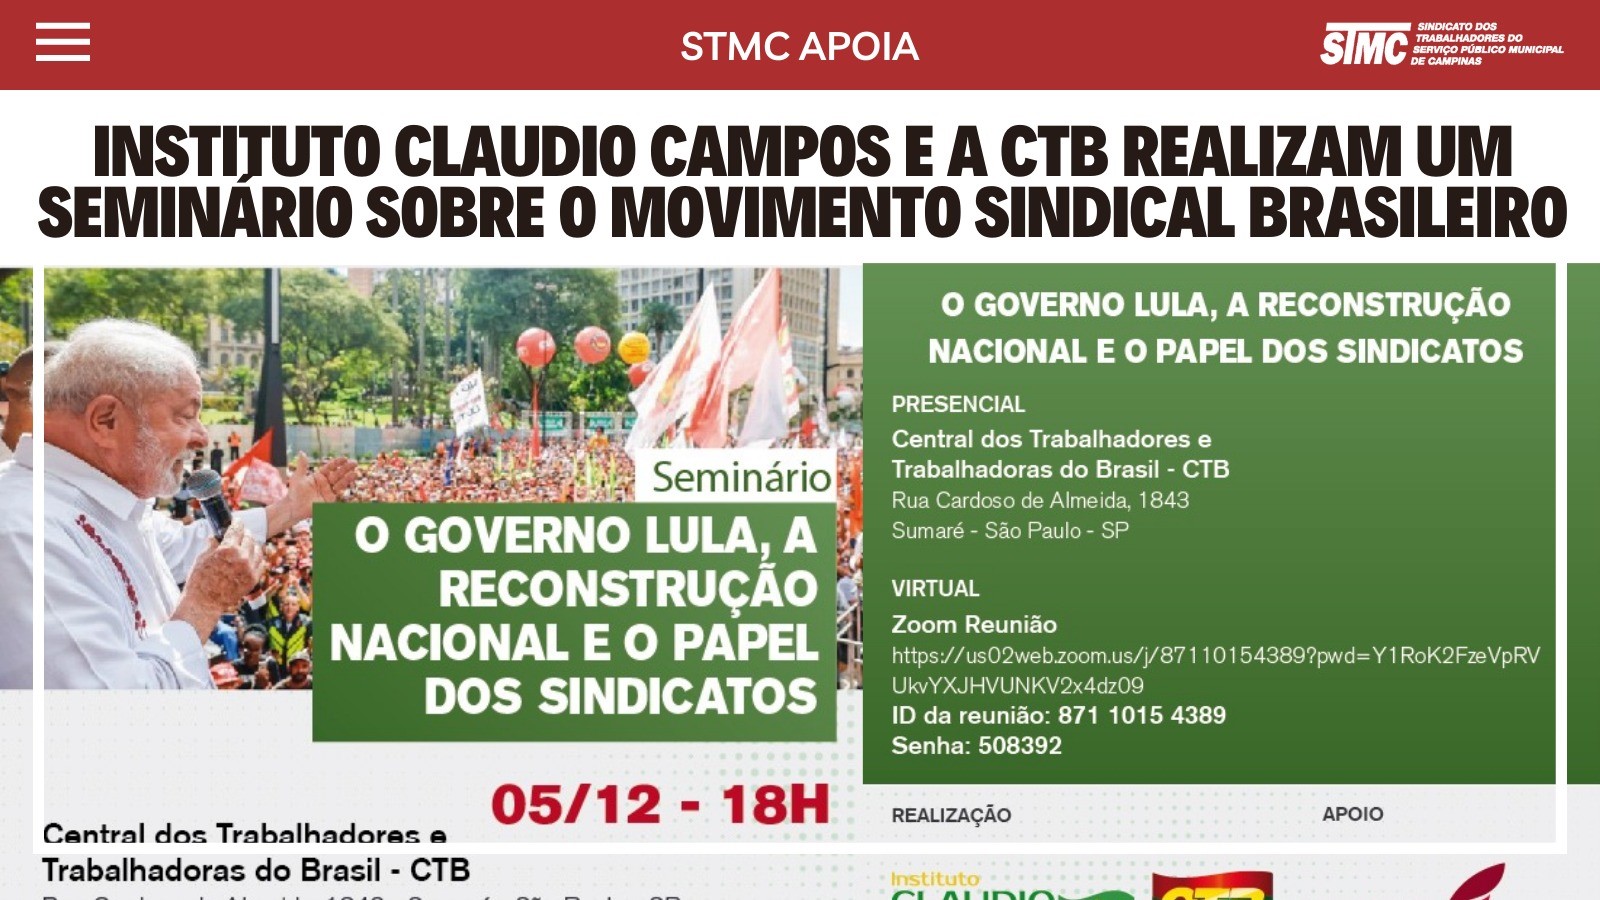 STMC convida para o seminário “O Governo Lula, a Reconstrução Nacional e o Papel dos Sindicatos” organizado pela CTB.